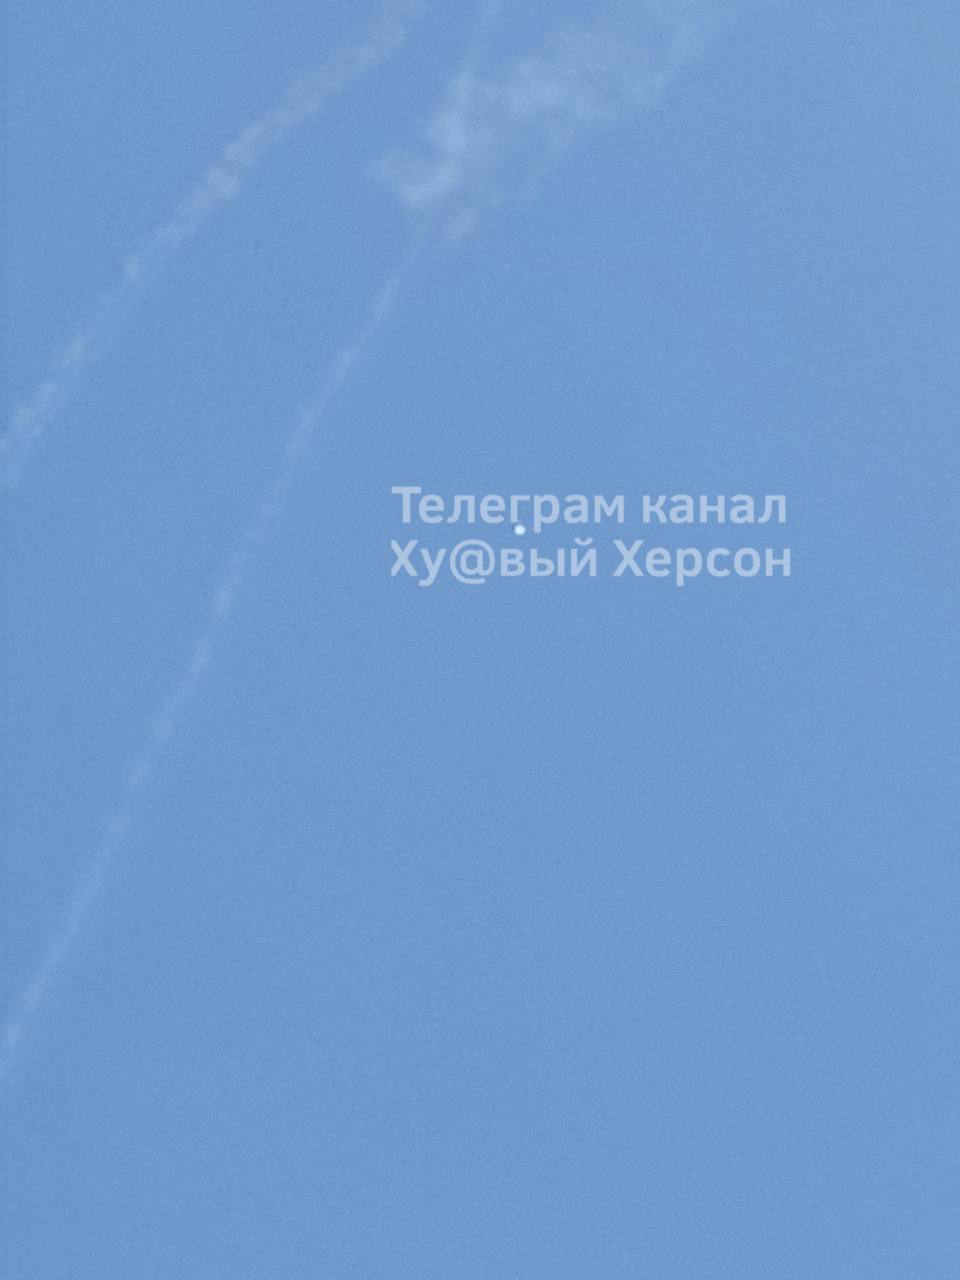 28-5-22 Su-35s shot down by MiG-29, Kherson c.jpg